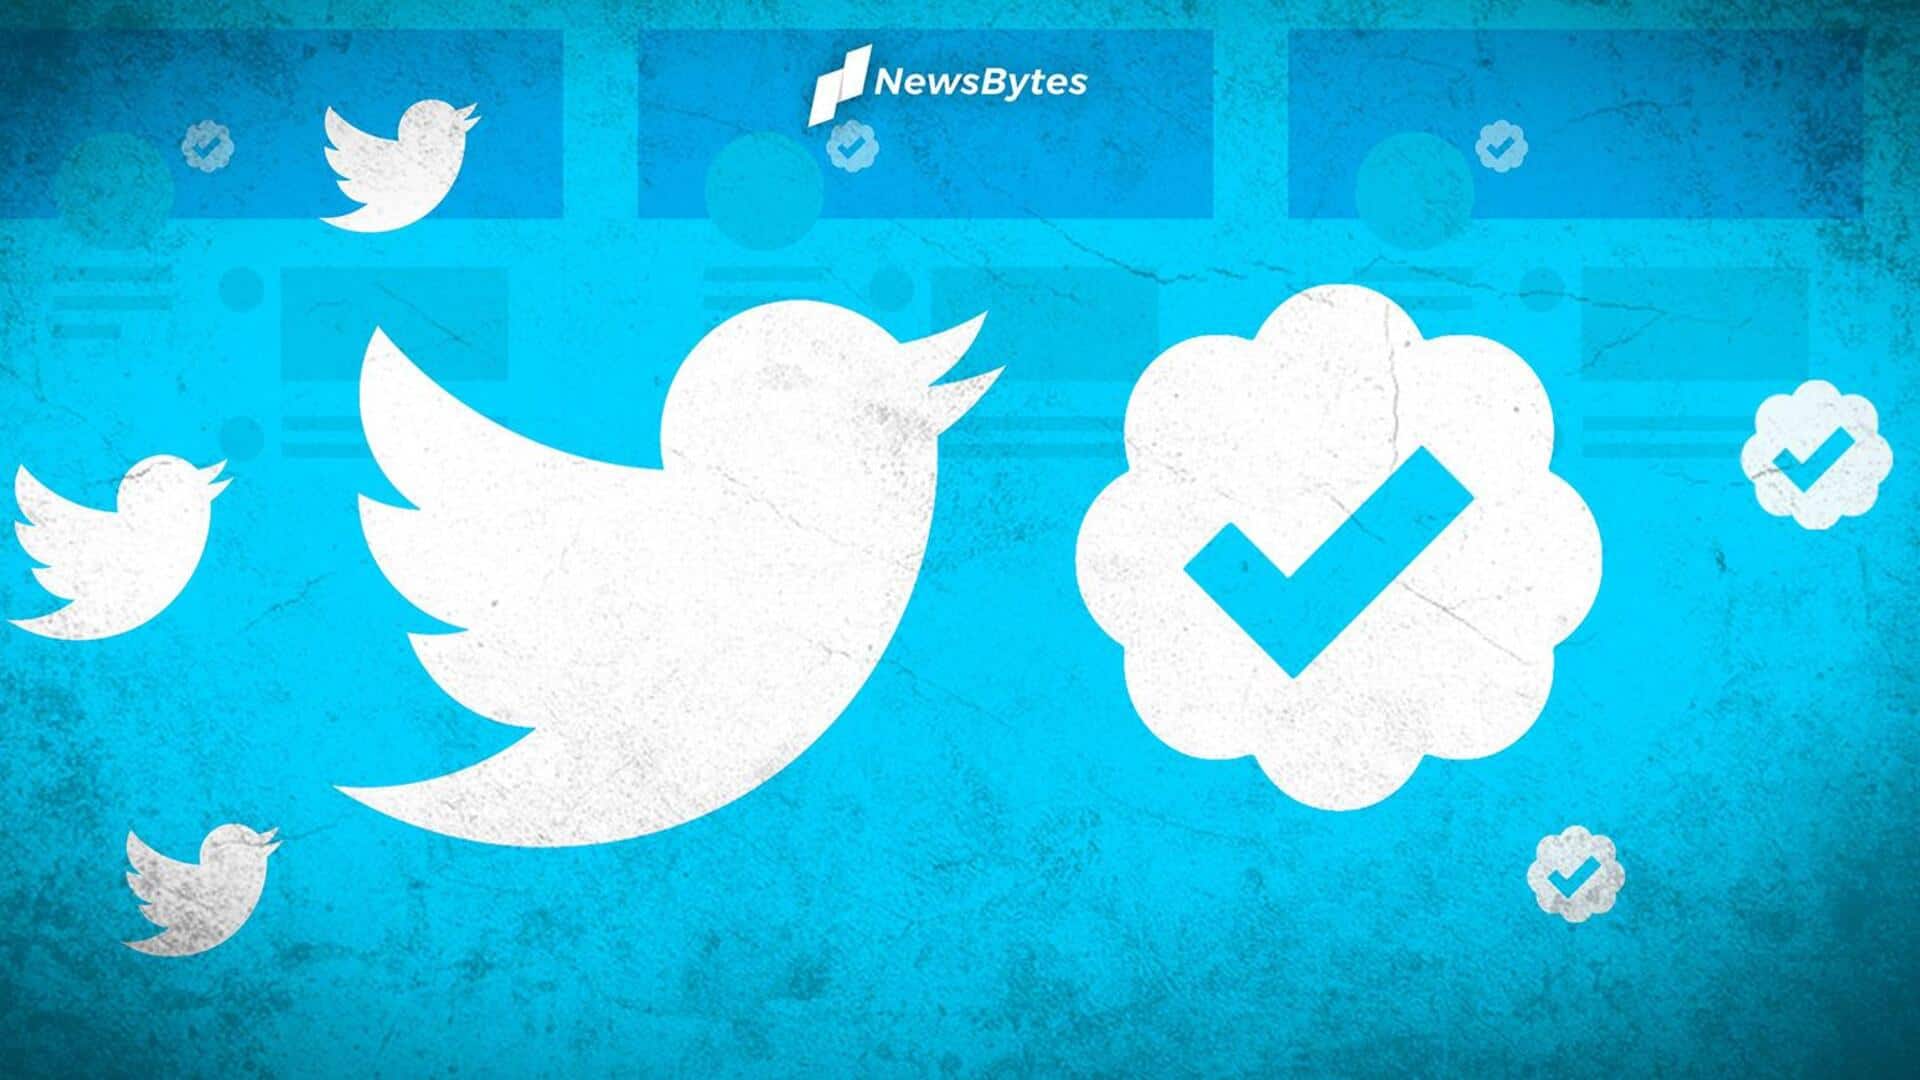 ट्विटर ने सरकार द्वारा वित्त पोषित मीडिया कंपनियों को लेबल देने का फैसला लिया वापस